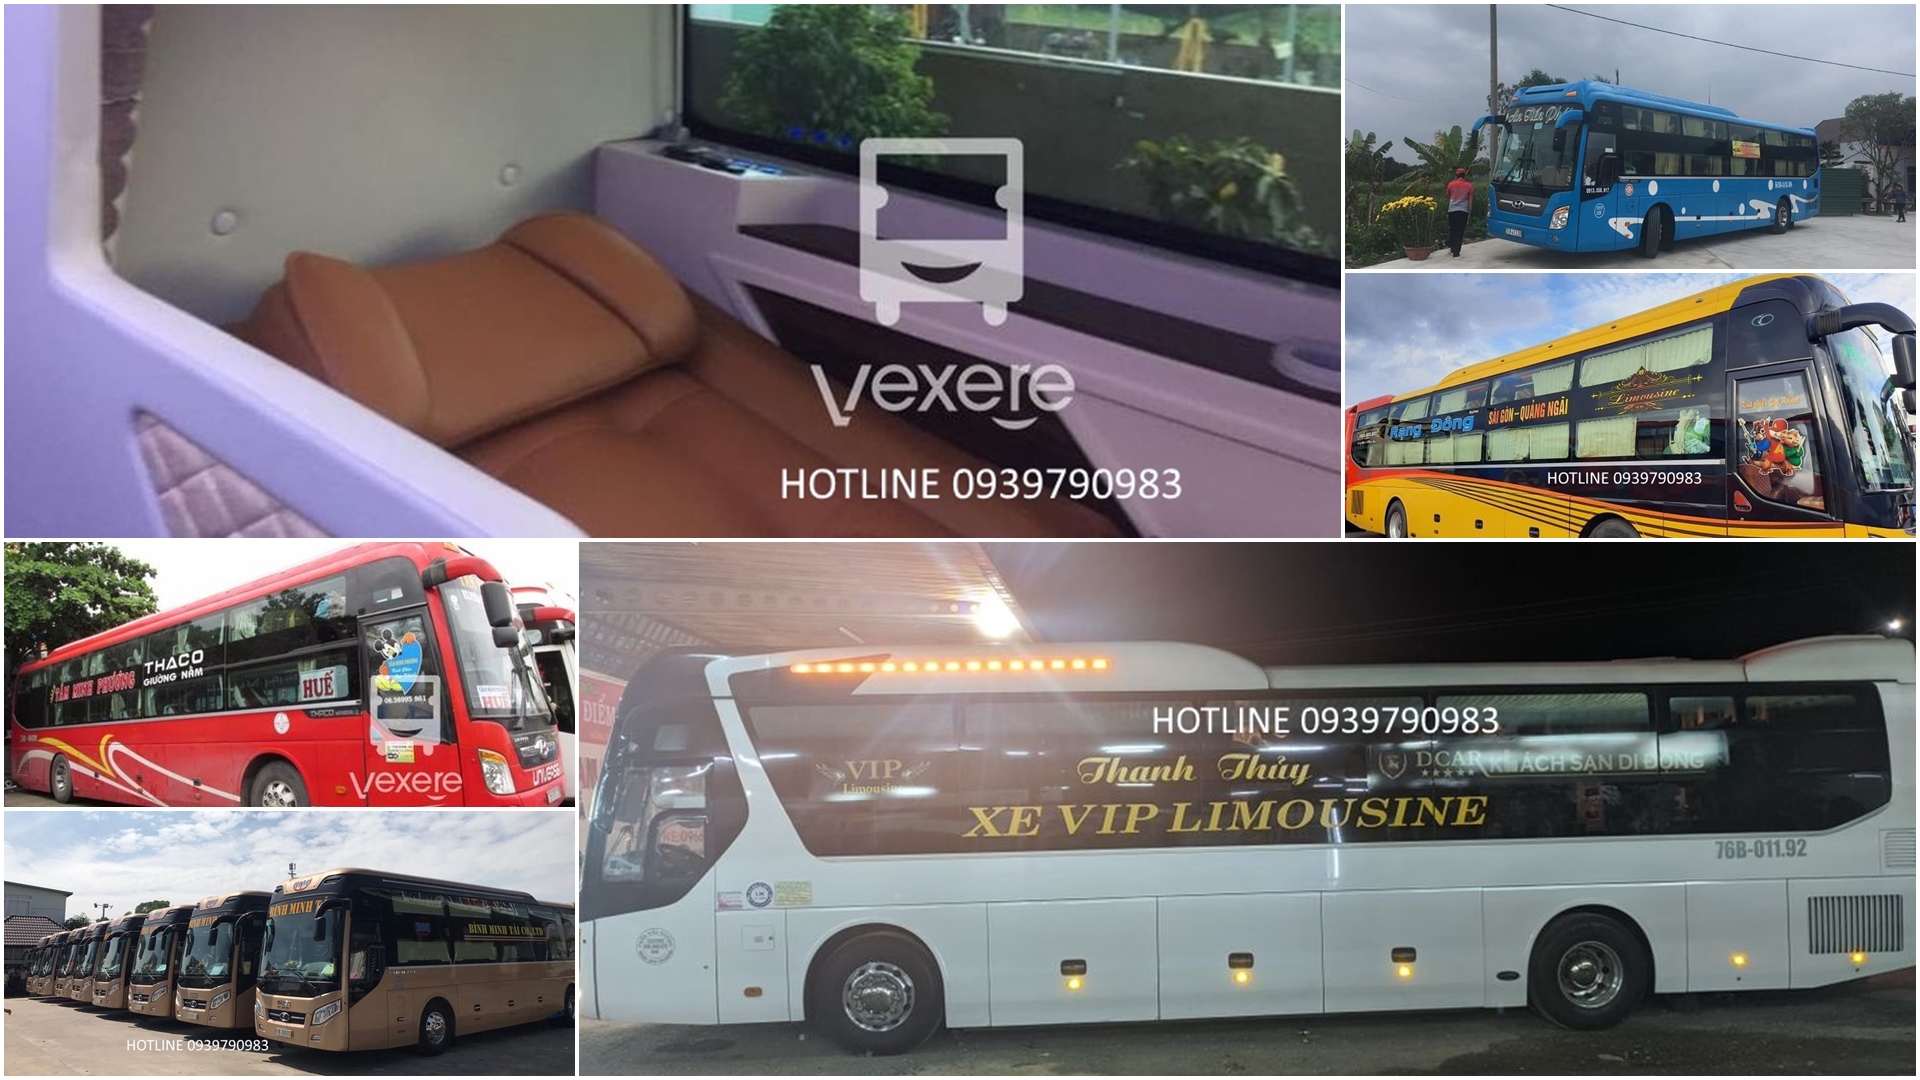 VietnamBusTicket.COM – CALL HOTLINE +84939790983 #bus24h Systems in Vietnam